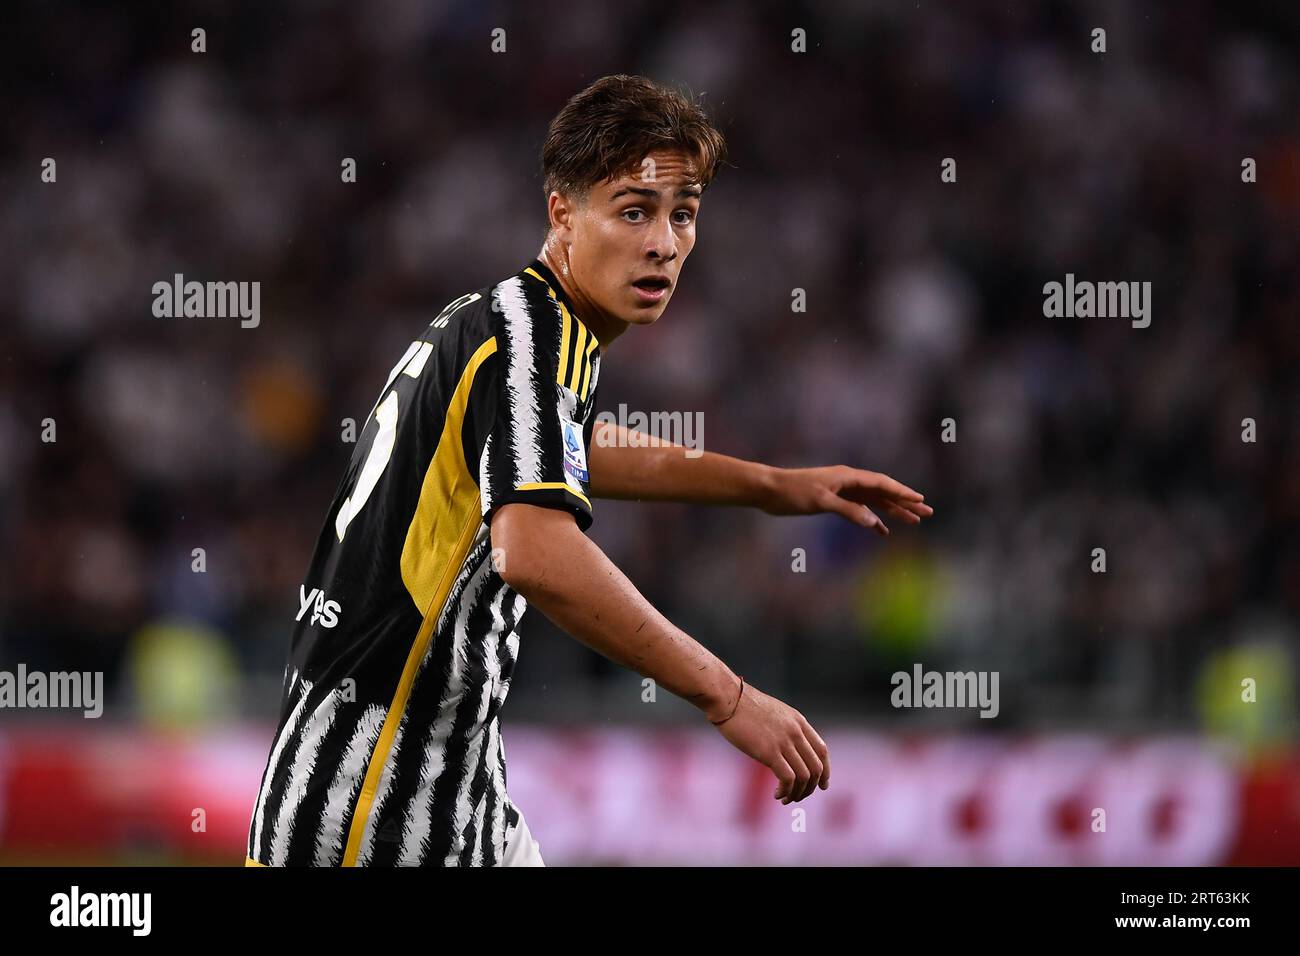 Kenan Yildiz of Juventus Next Gen celebrate after scoring during the  News Photo - Getty Images